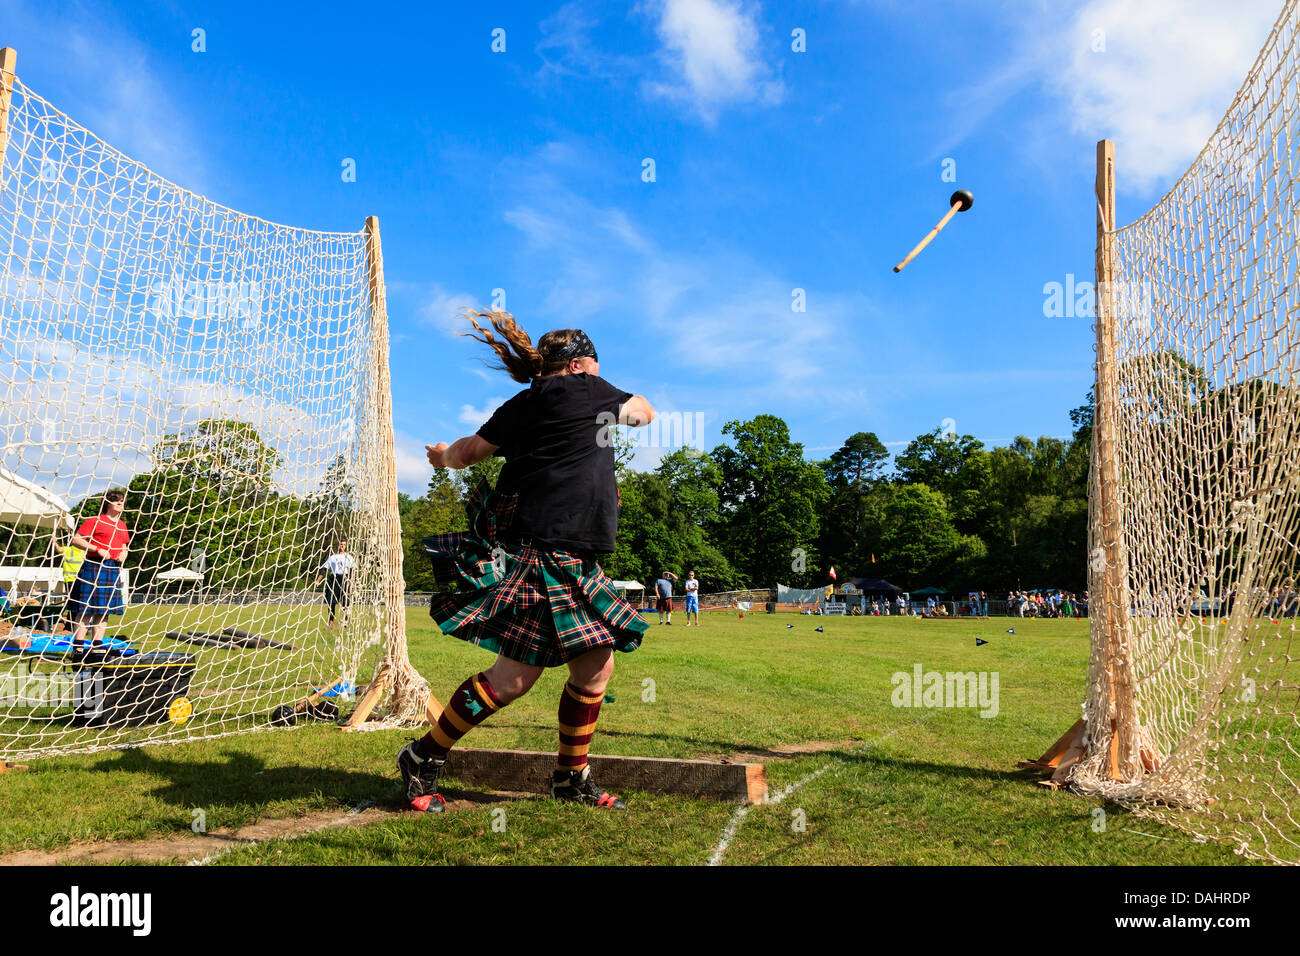 Konkurrent im schottischen Highland Games 22 Pfund Hammer, eine traditionelle schottische Wettbewerb werfen. Stockfoto